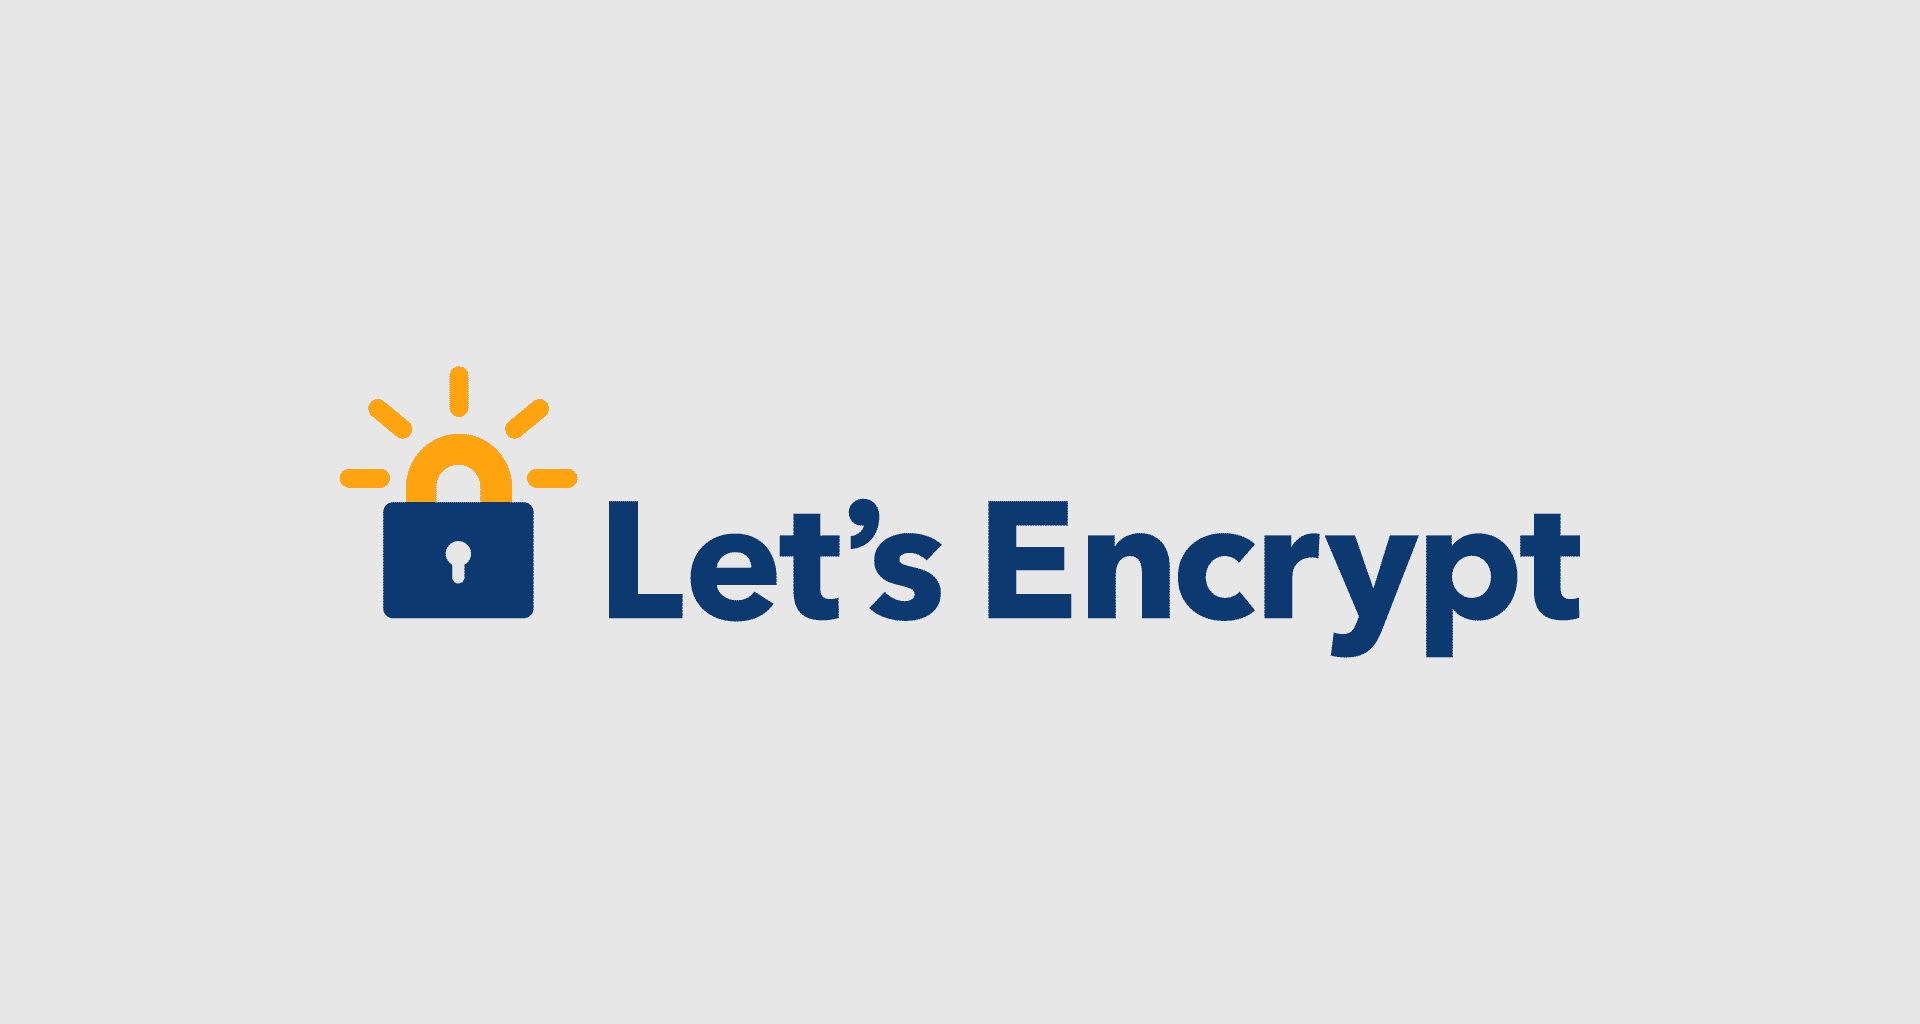 yüksek çözünürlüklü let's encrypt logosu